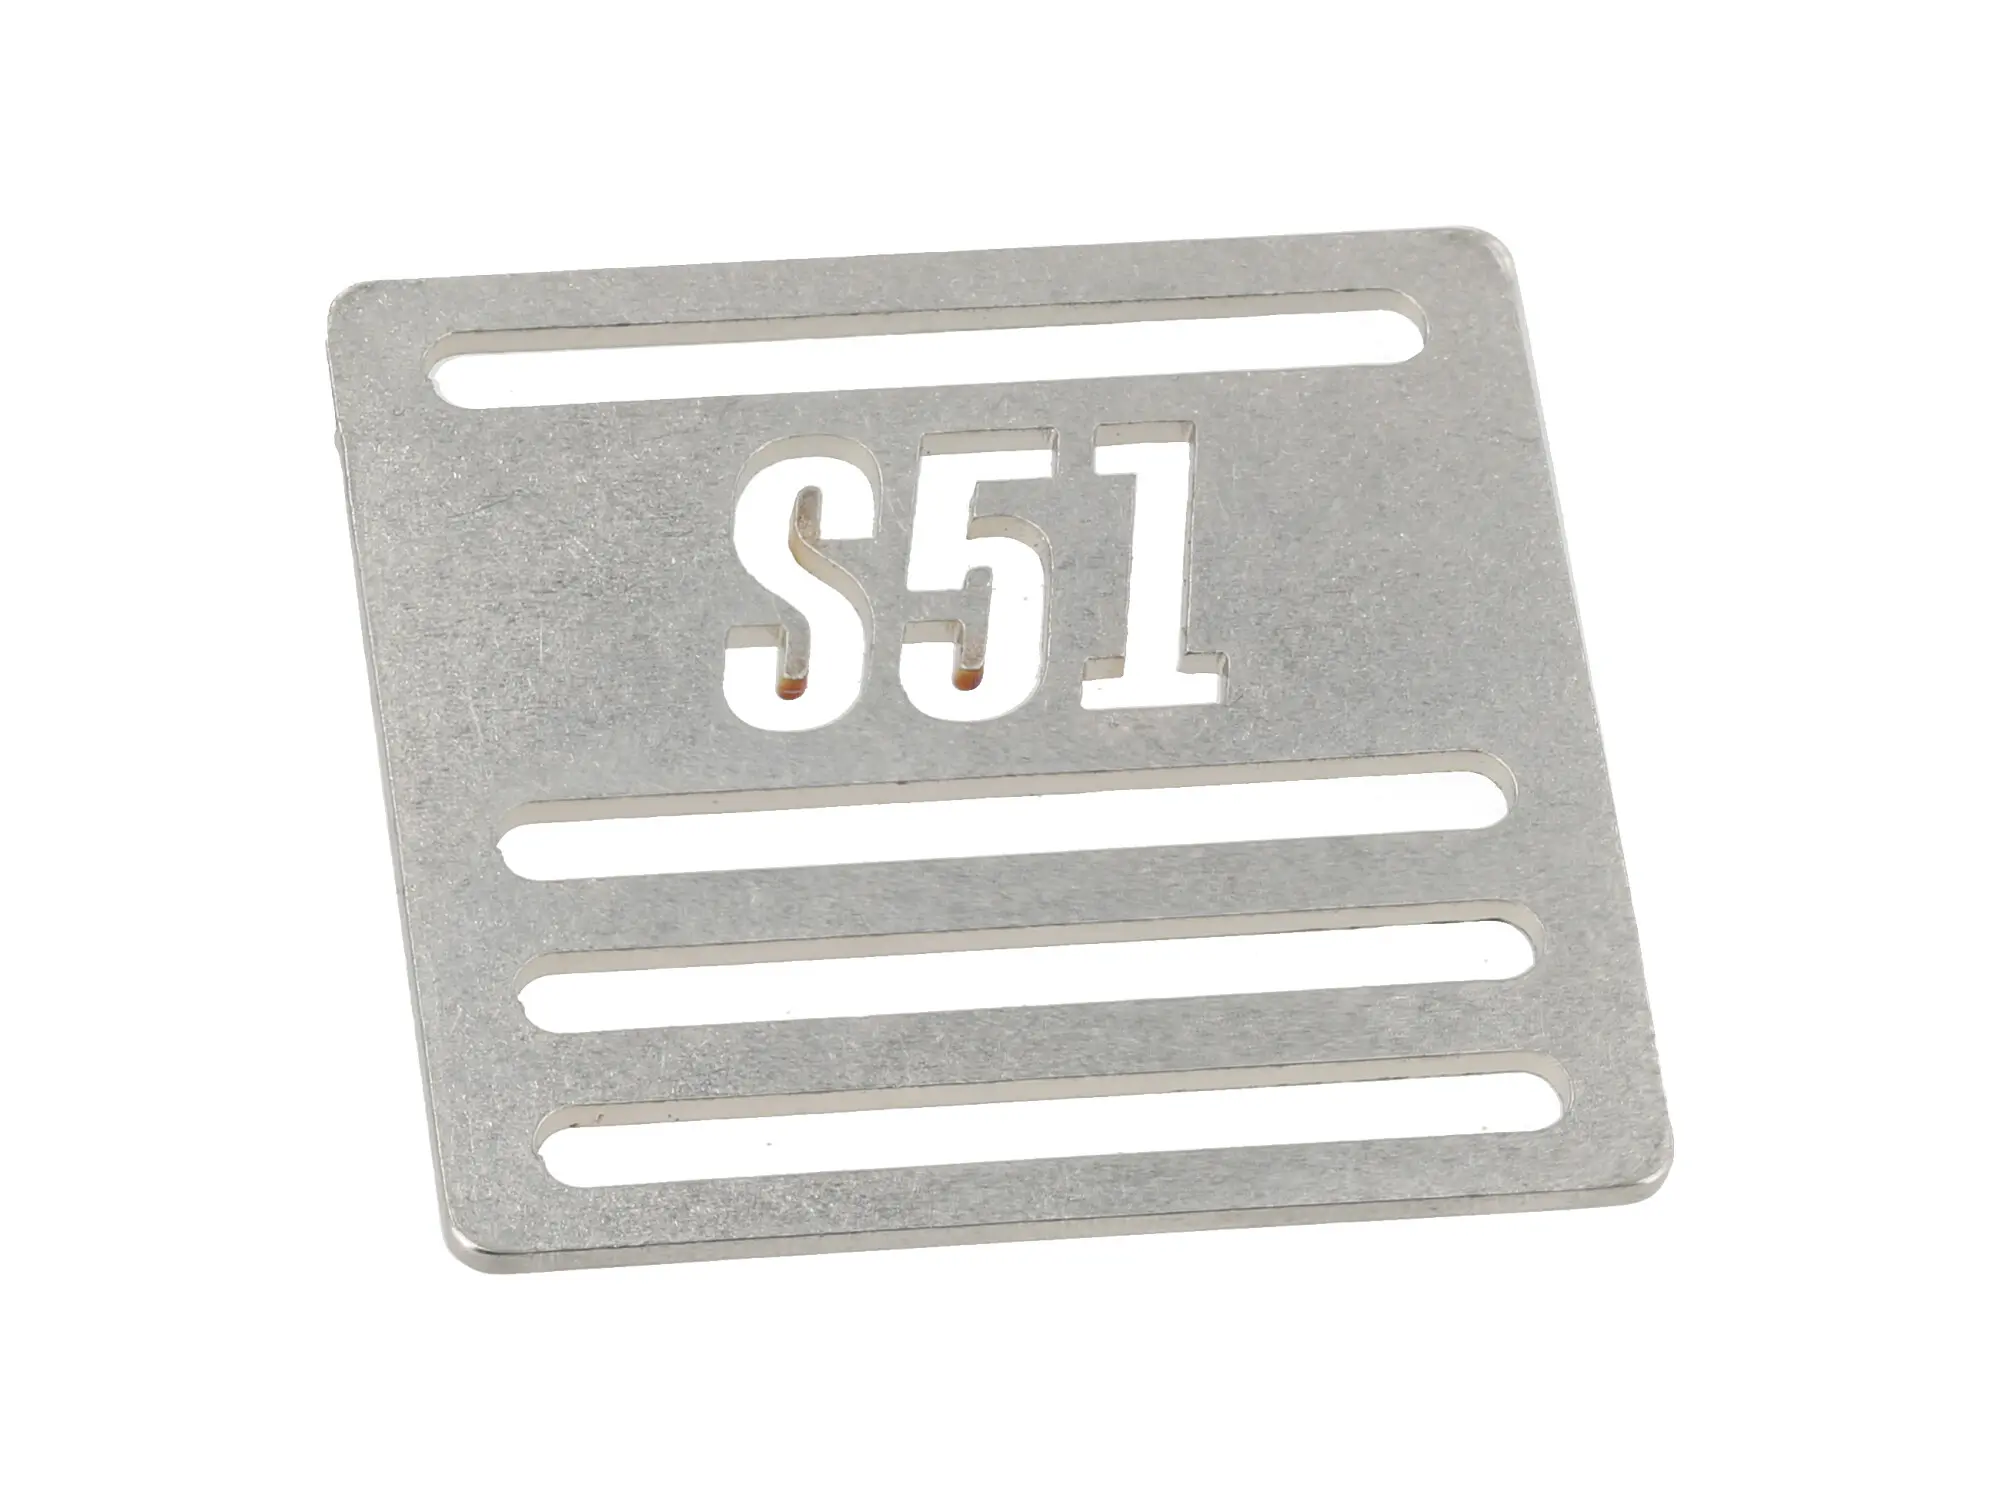 Schnalle "S51" für Gepäckträgerriemen, kursiv, Edelstahl, Art.-Nr.: 10070845 - Bild 1